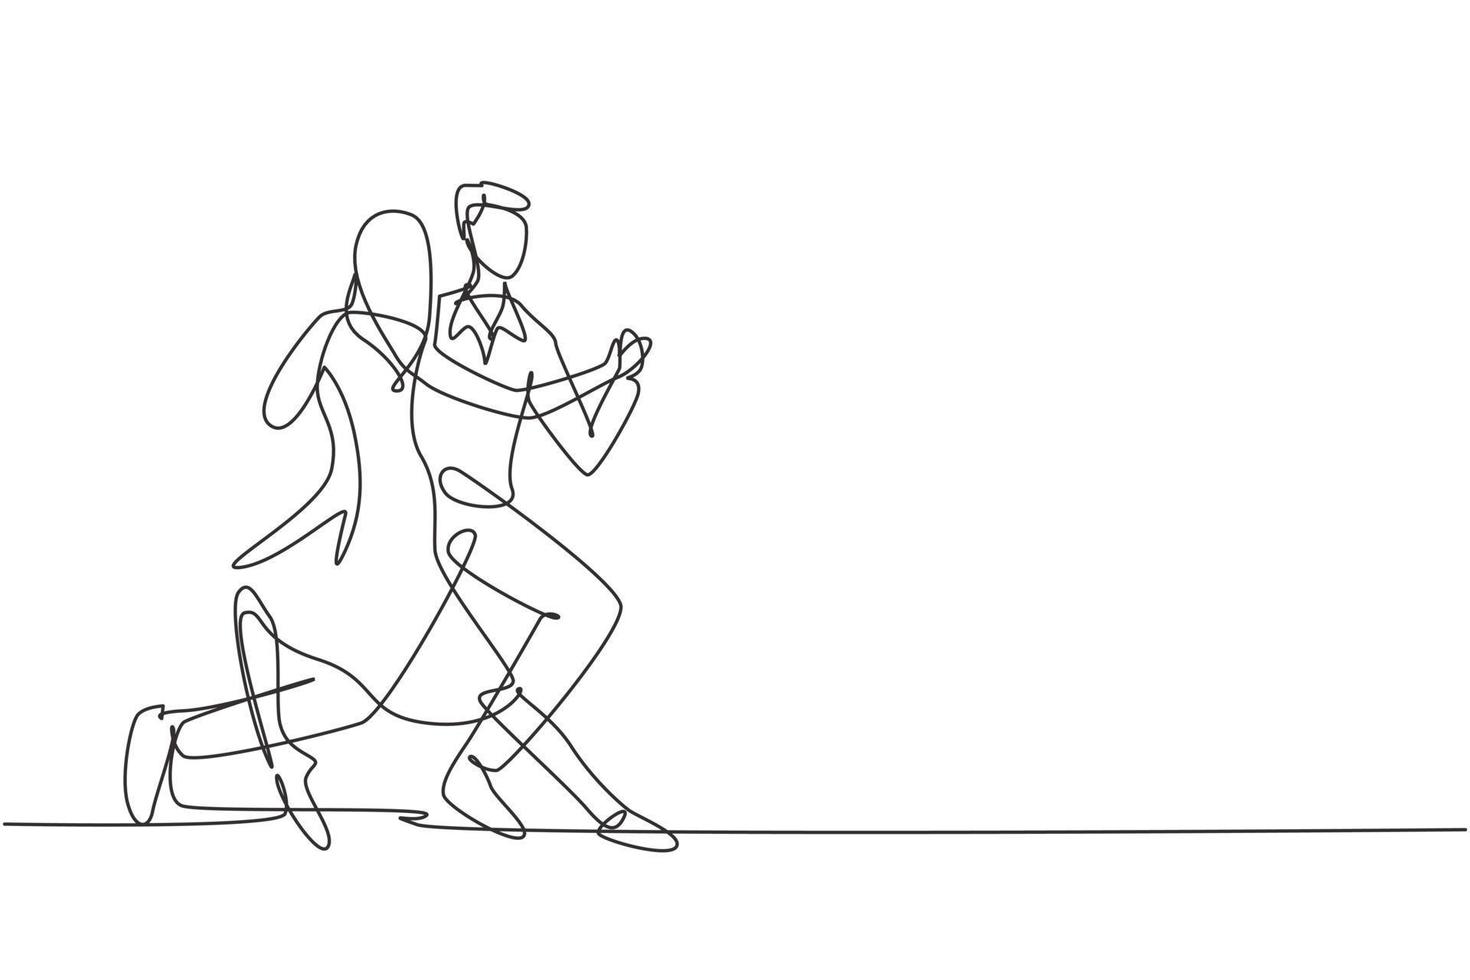 desenho de linha única contínua pessoas dançando salsa. casais, homem e mulher na dança. pares de dançarinos com movimentos de valsa tango e salsa. ilustração em vetor desenho gráfico dinâmico de uma linha